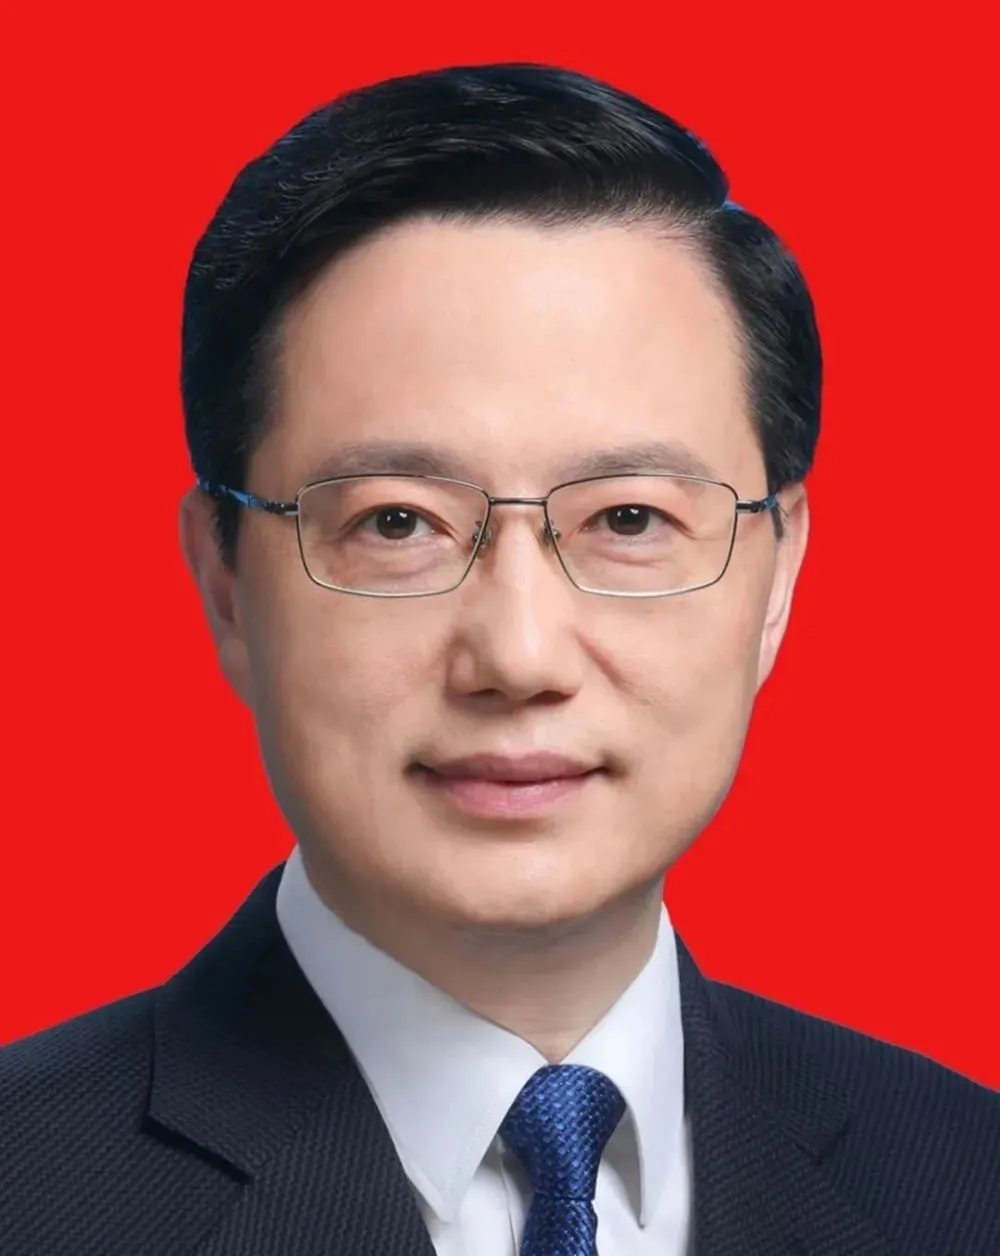 他是现任湖北省副书记,全国最年轻的副省部级干部,年轻有为!